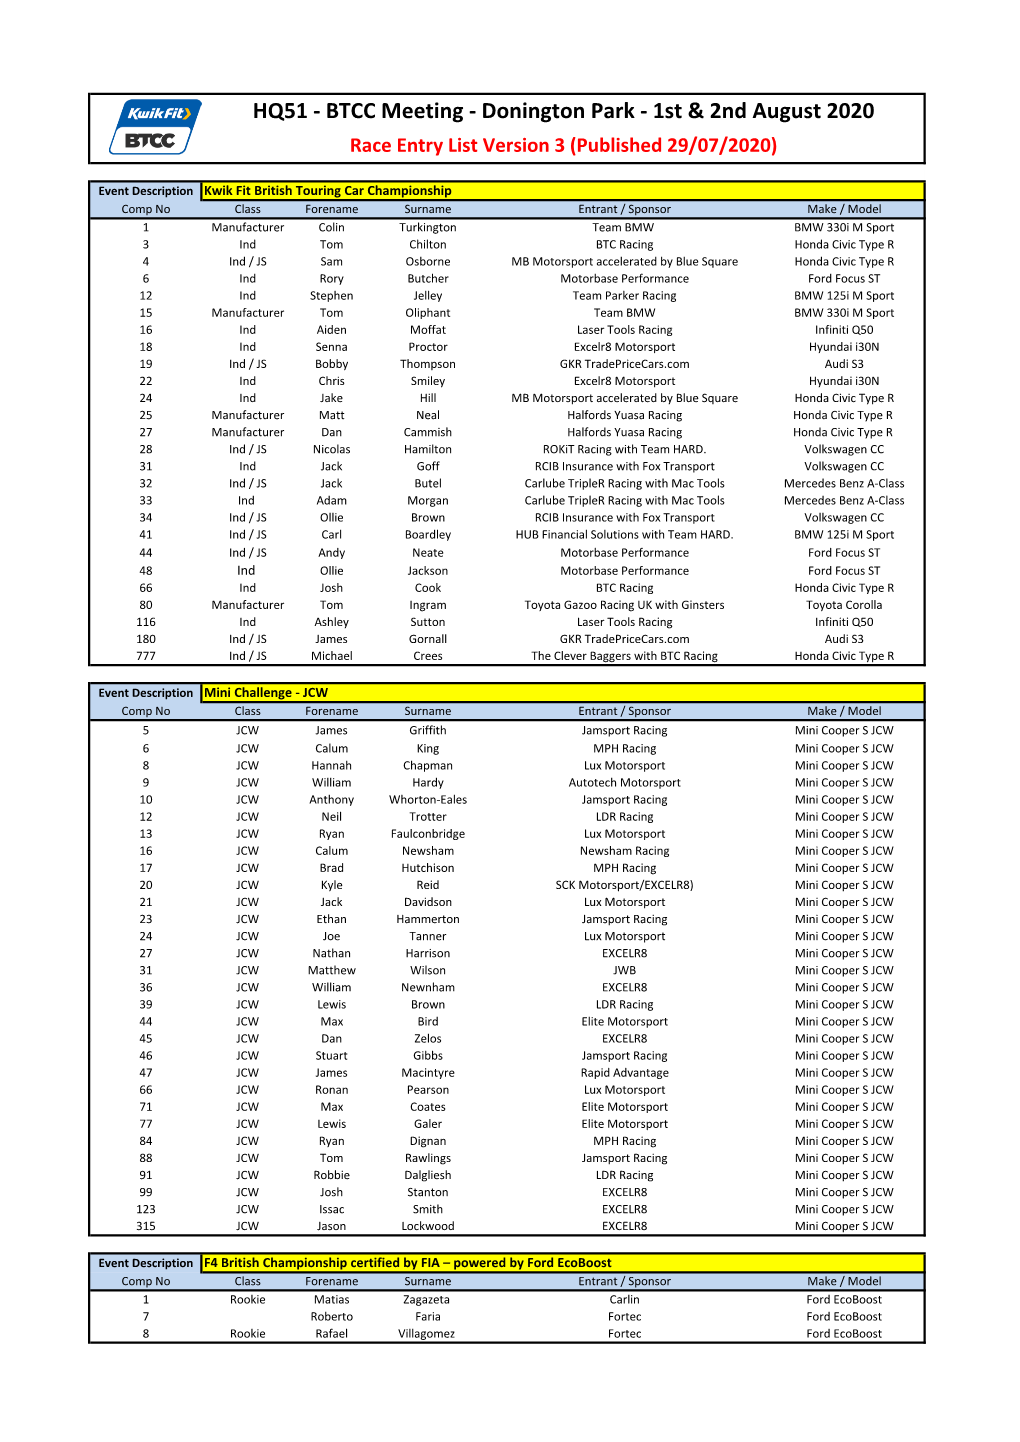 HQ51 - BTCC Meeting - Donington Park - 1St & 2Nd August 2020 Race Entry List Version 3 (Published 29/07/2020)